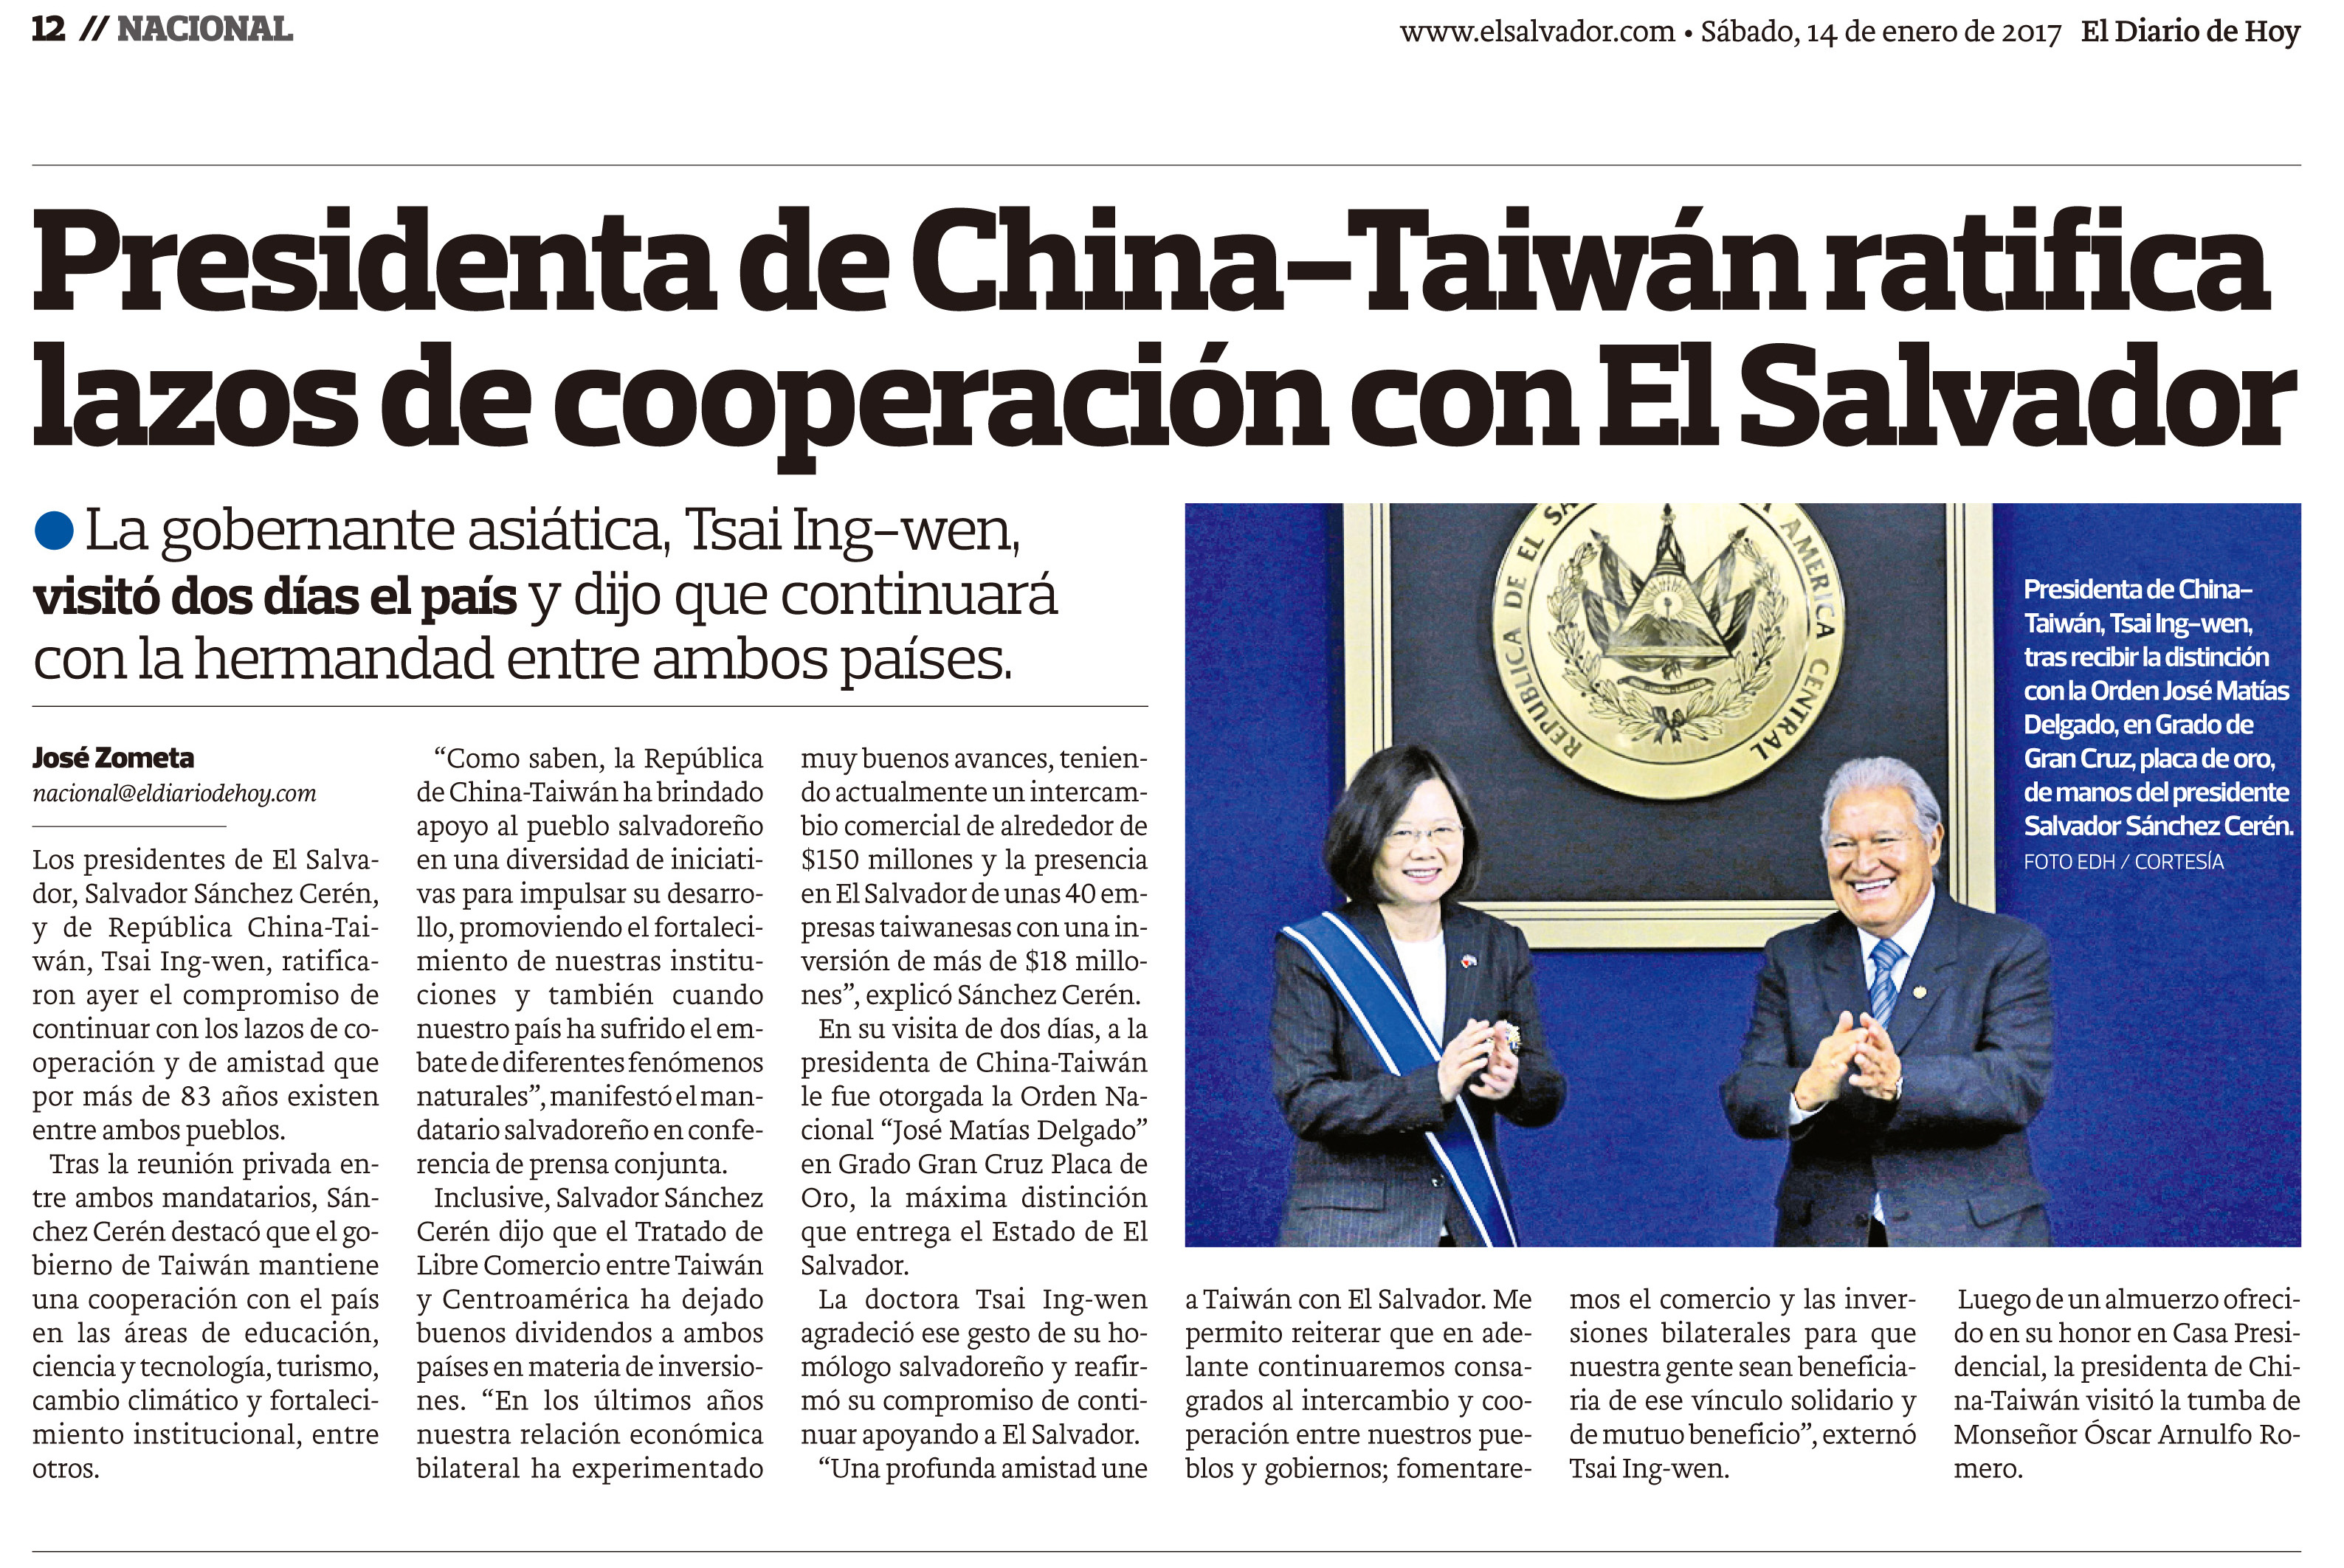 中華民國(台灣)總統重申與薩爾瓦多合作關係